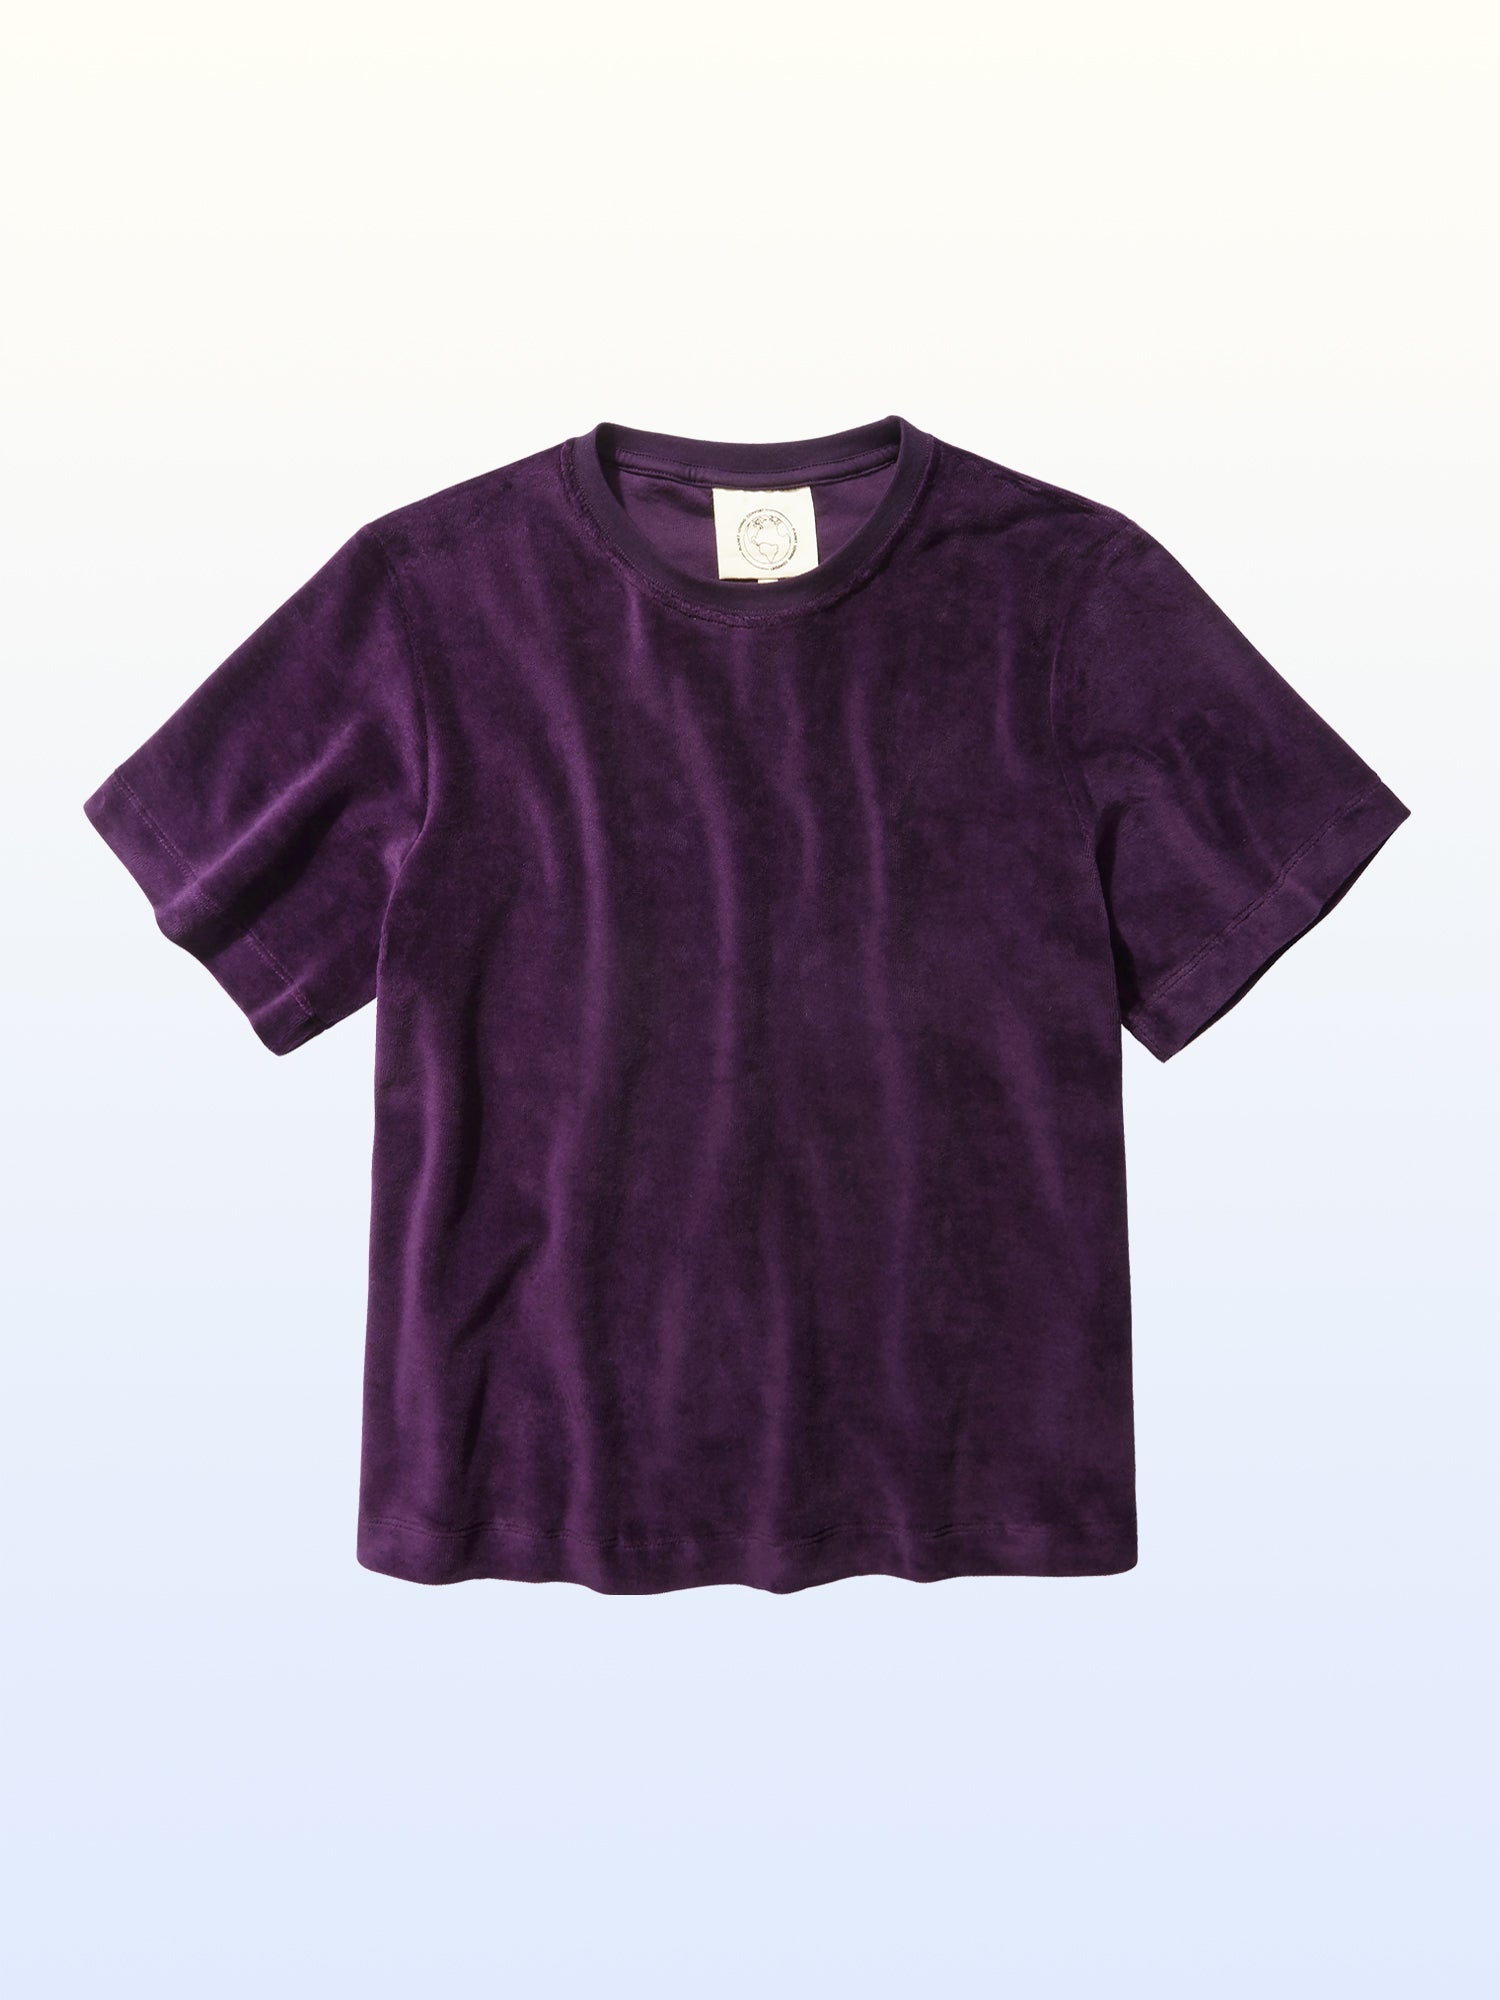 Planet_Loving-Company-Velour-T-shirt-Purple_9f6b972b-cc46-43f3-b1ce-fa6fca0a5eff.jpg